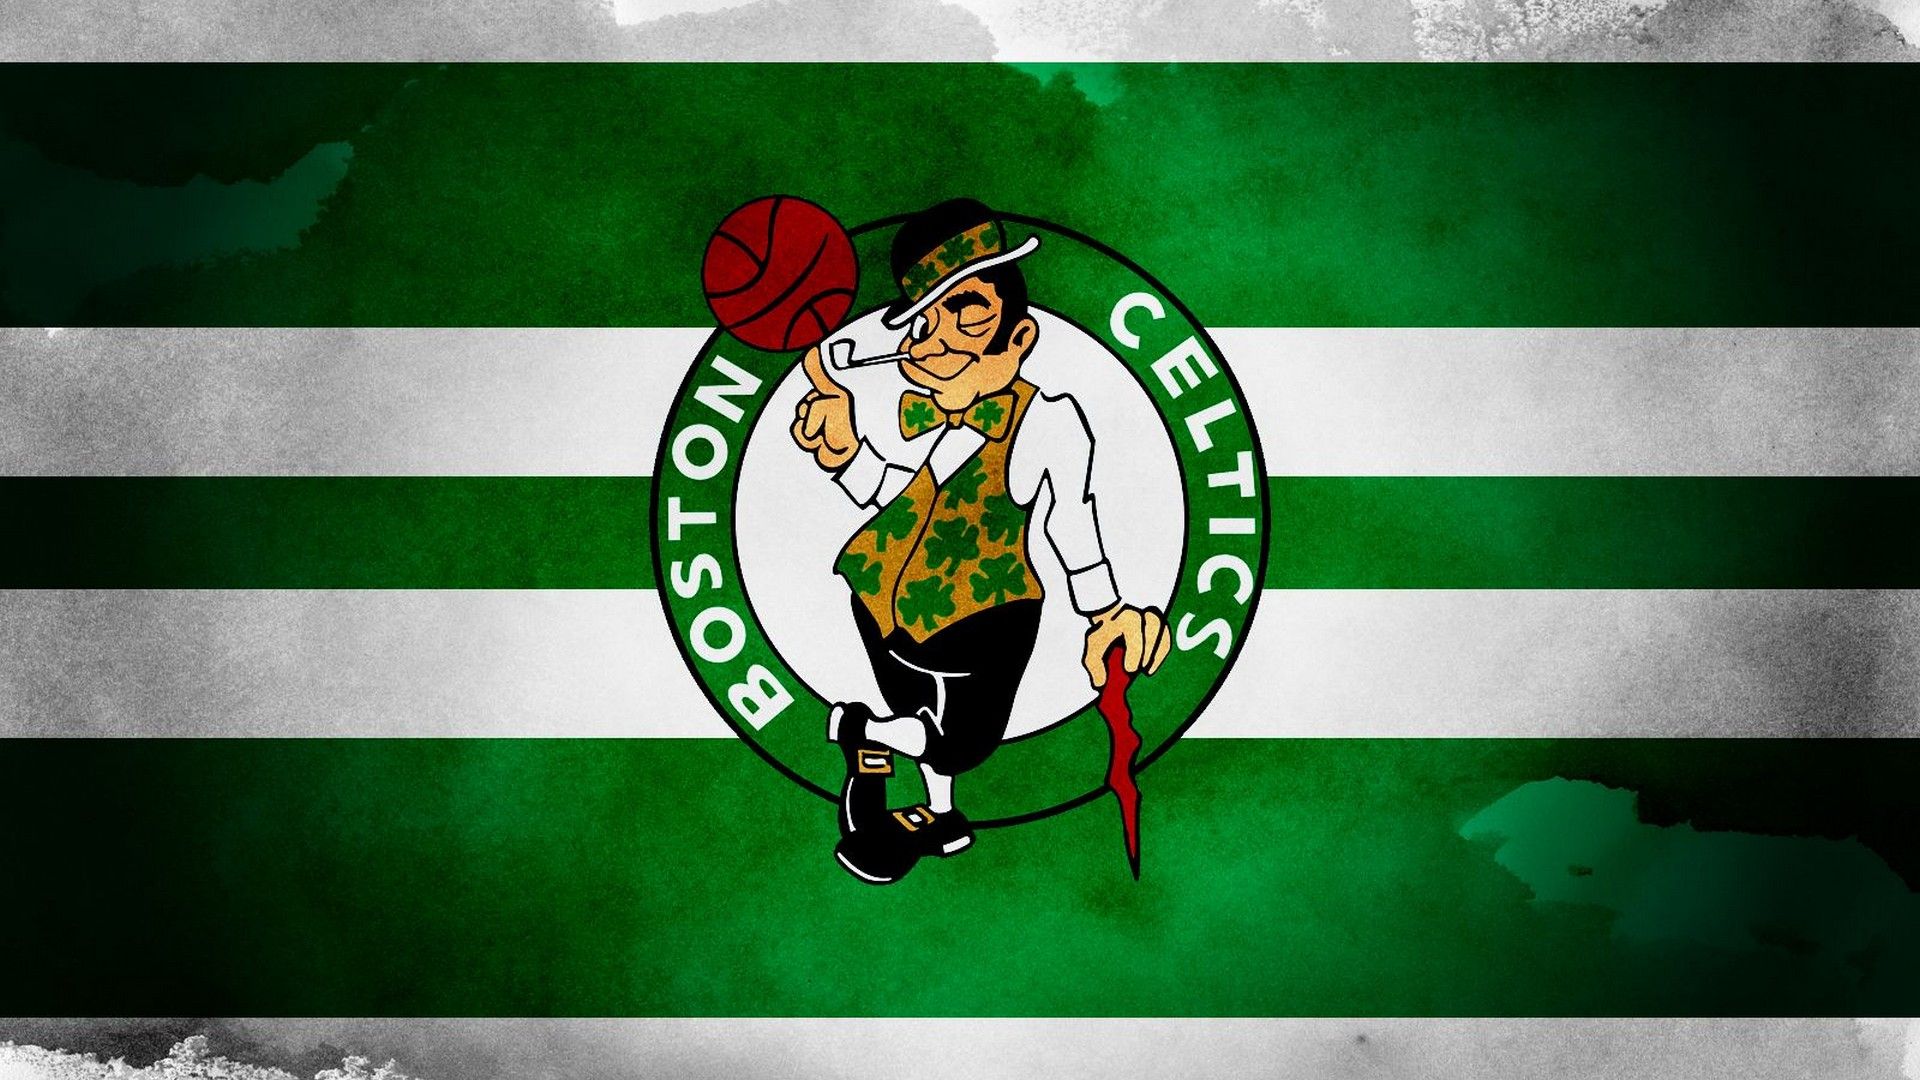 Celtics 2020 Wallpapers - Wallpaper Cave